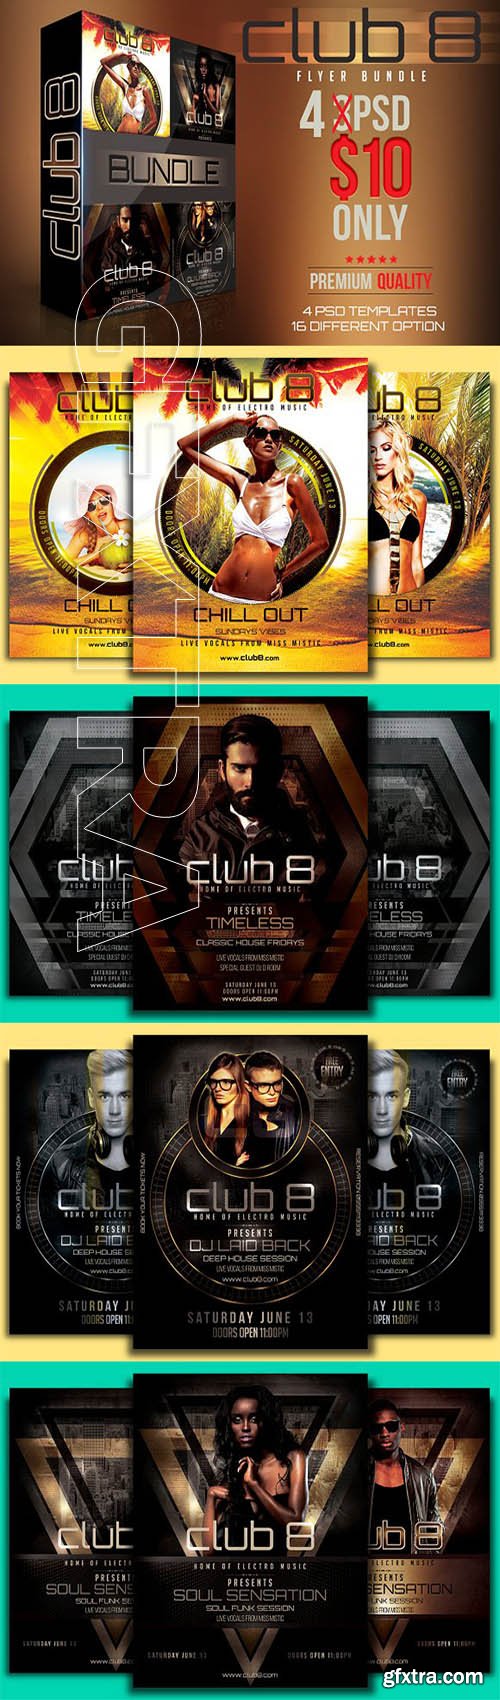 Club 8 Flyer Bundle